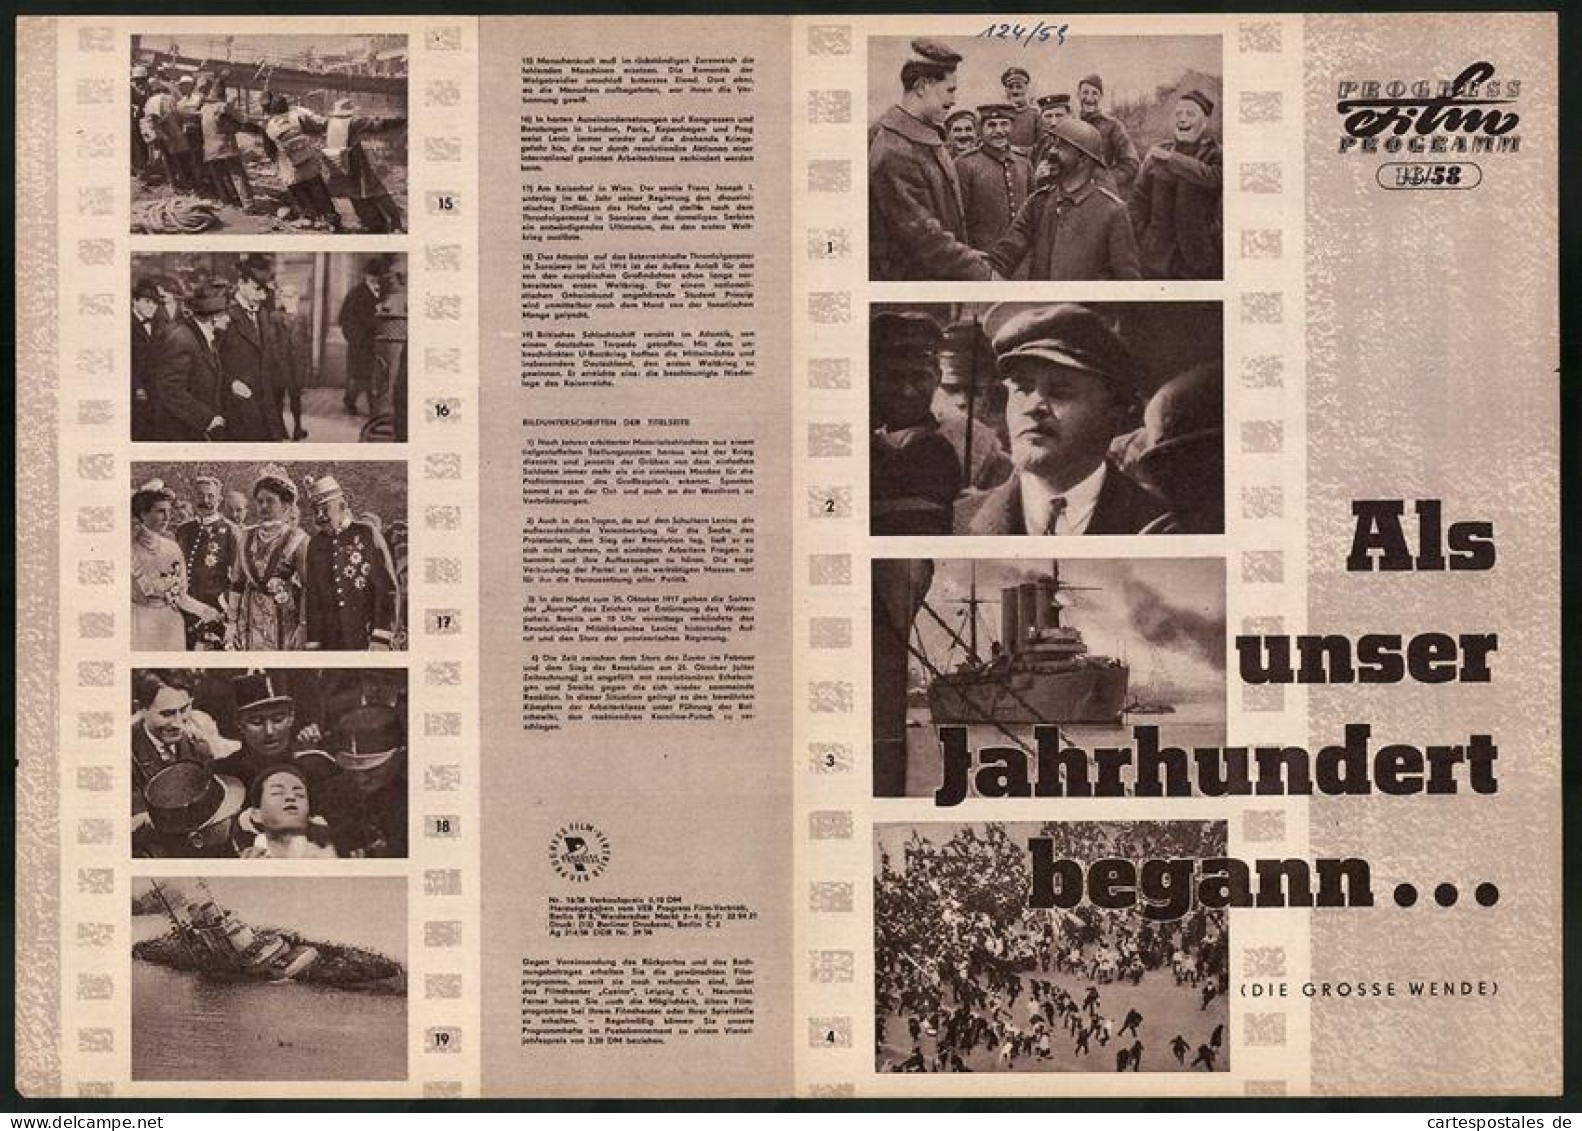 Filmprogramm PFP Nr. 16 /58, Als Unser Jahrhundert Begann..., Dokumentarfilm, Regie: Sergei Gurow  - Magazines